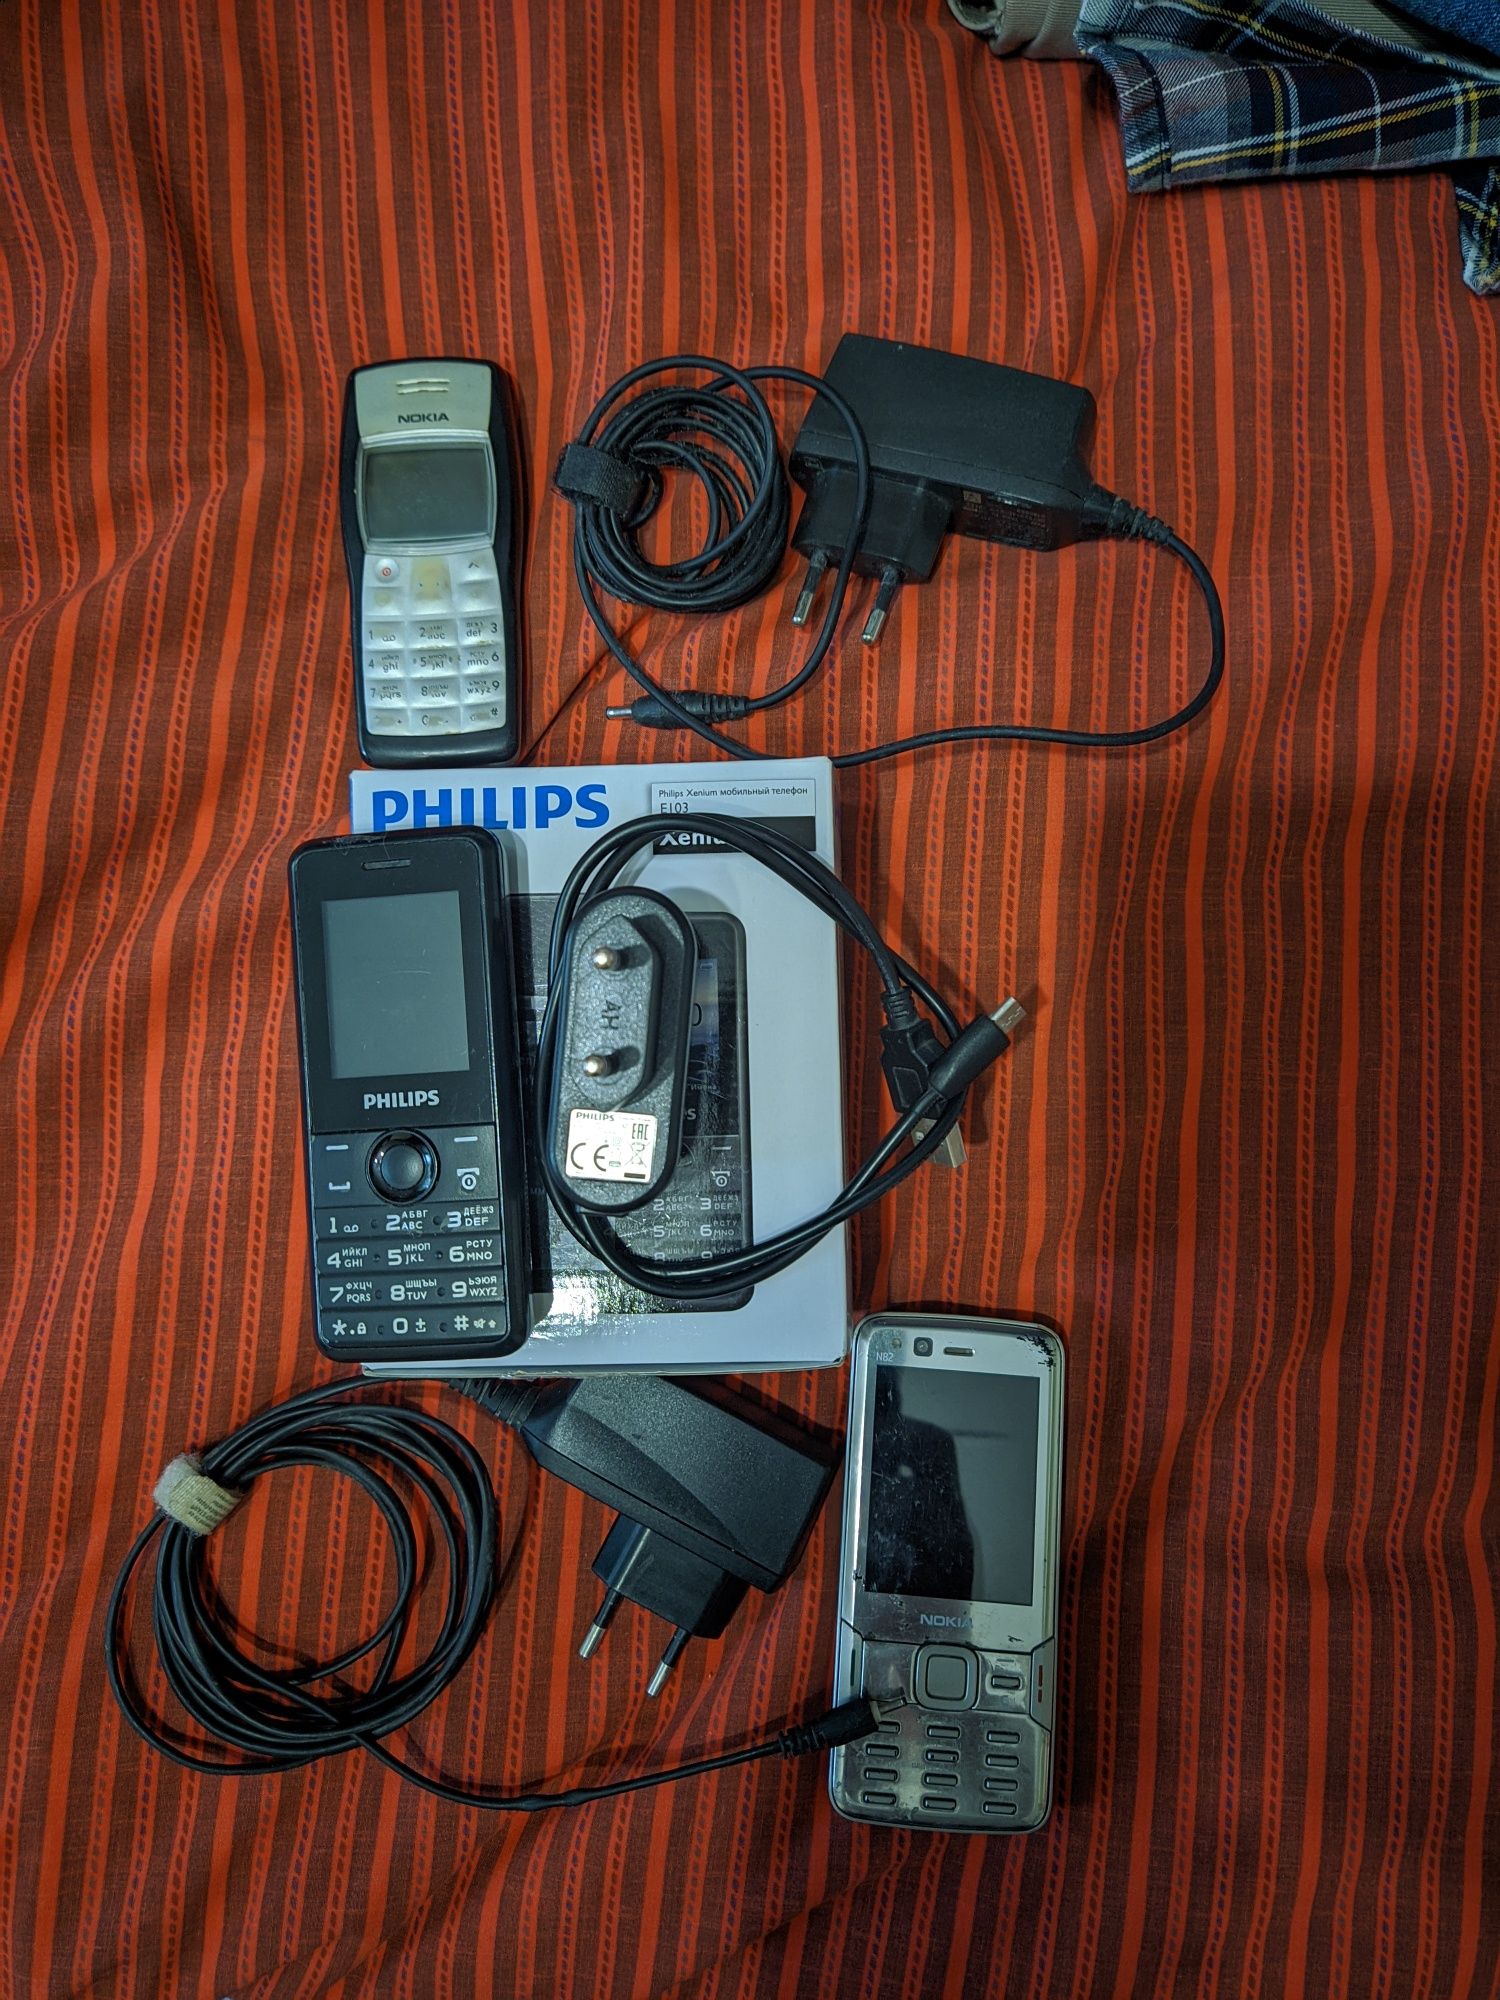 Philips E103, Nokia N 82, Nokia 1100.